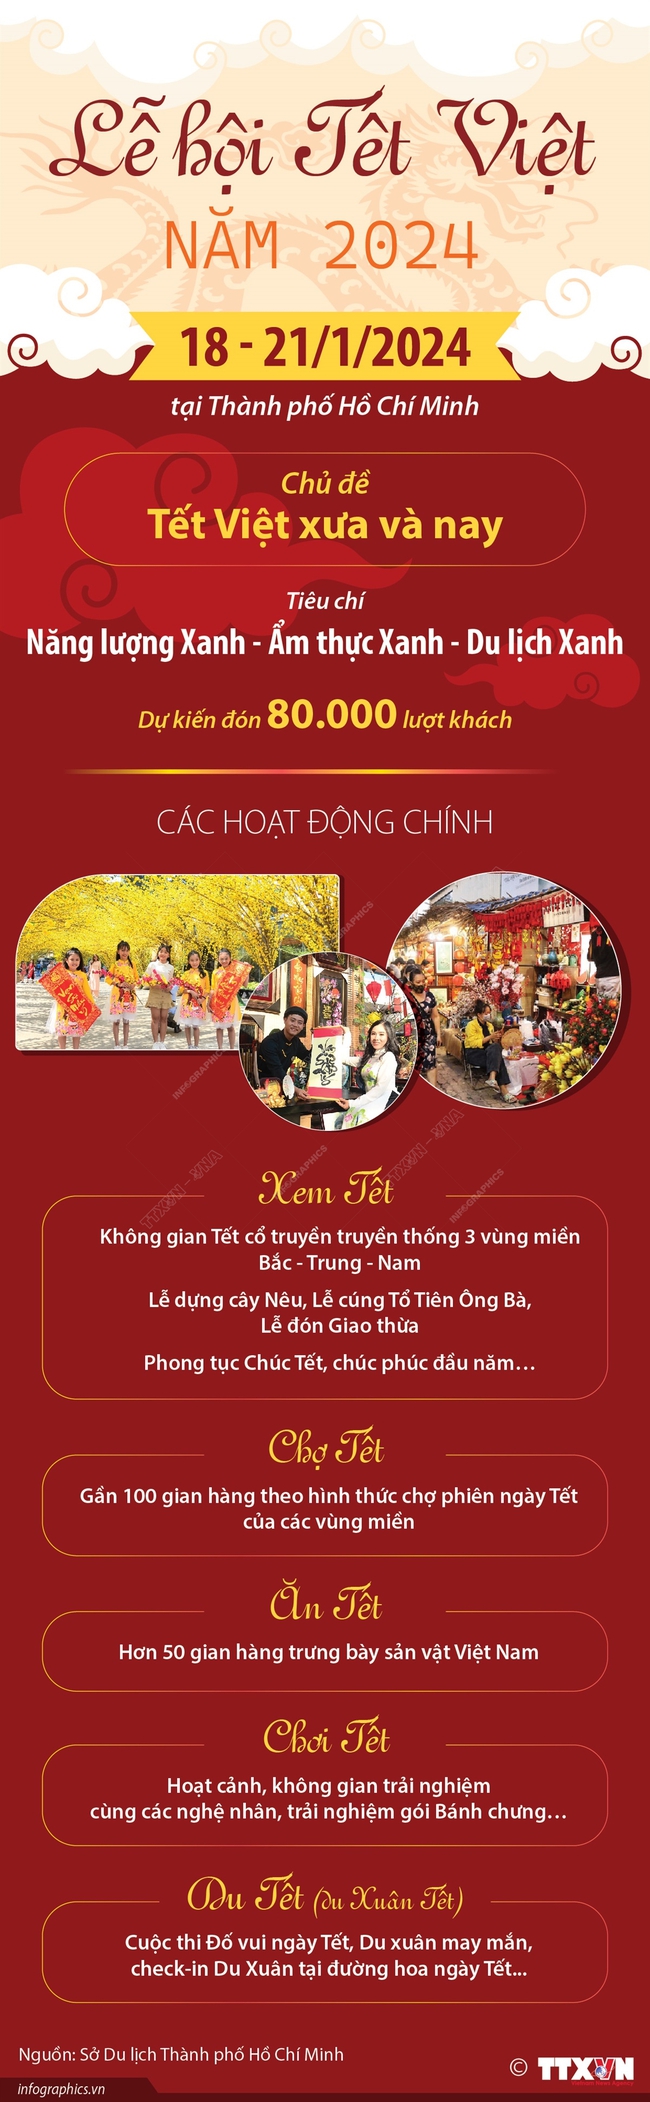  Lễ hội Tết Việt năm 2024 - Ảnh 1.